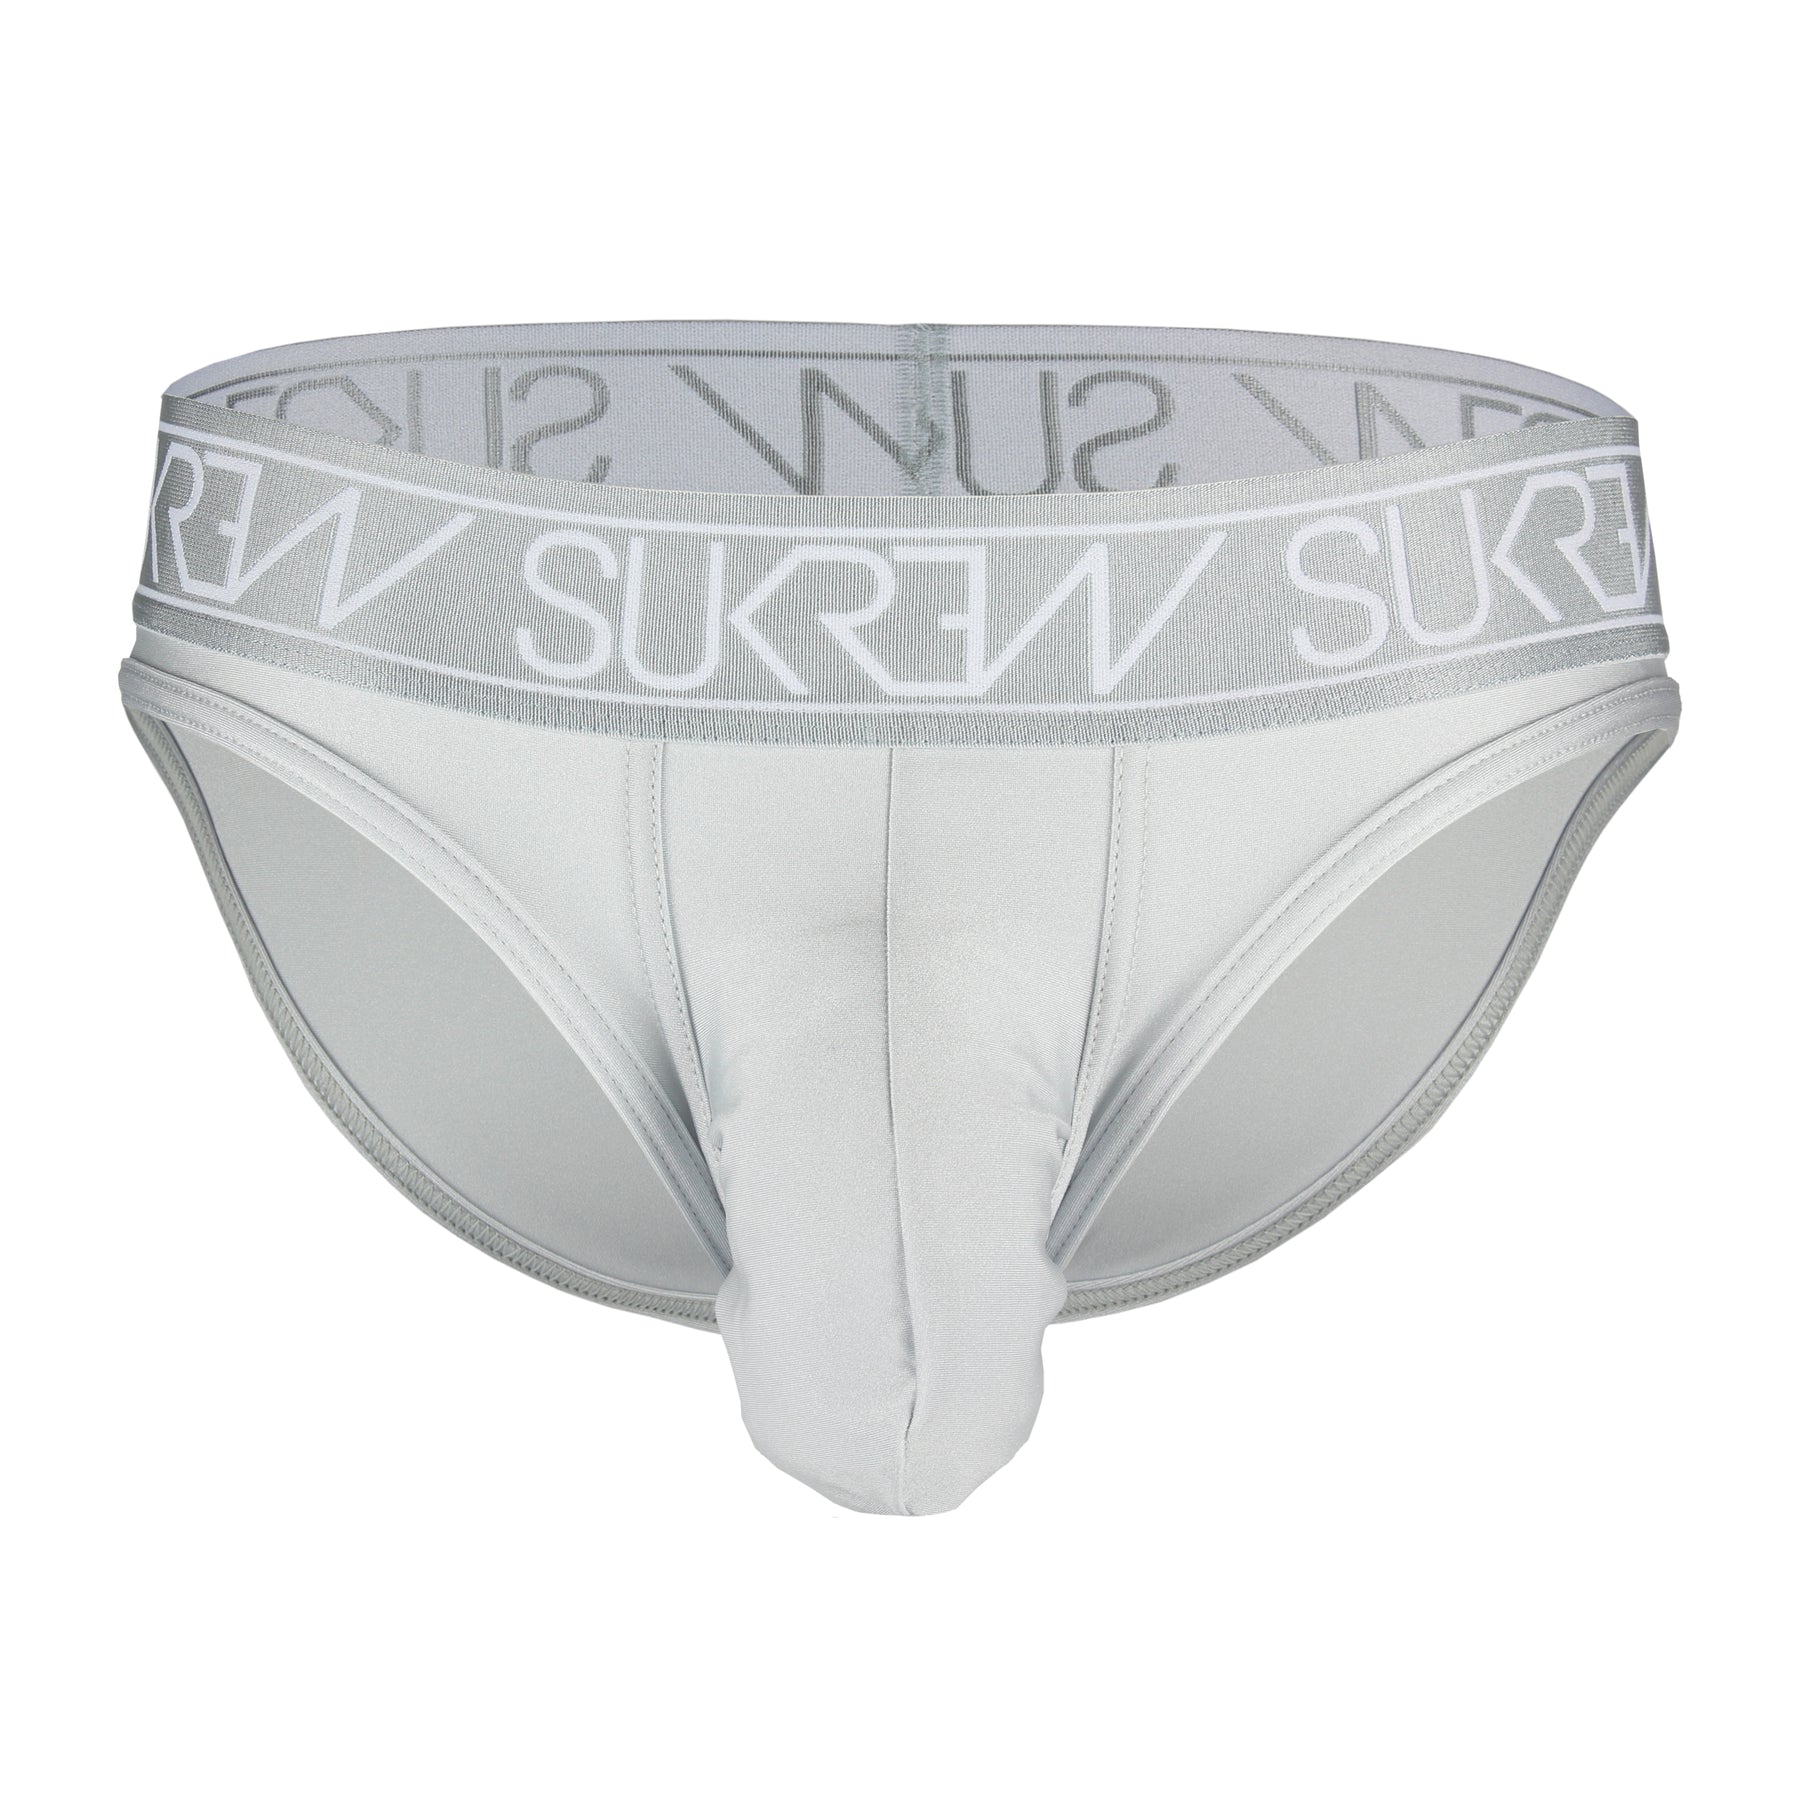 Silver Classic Brief | Men's Polyamide Underwear | SUKREW